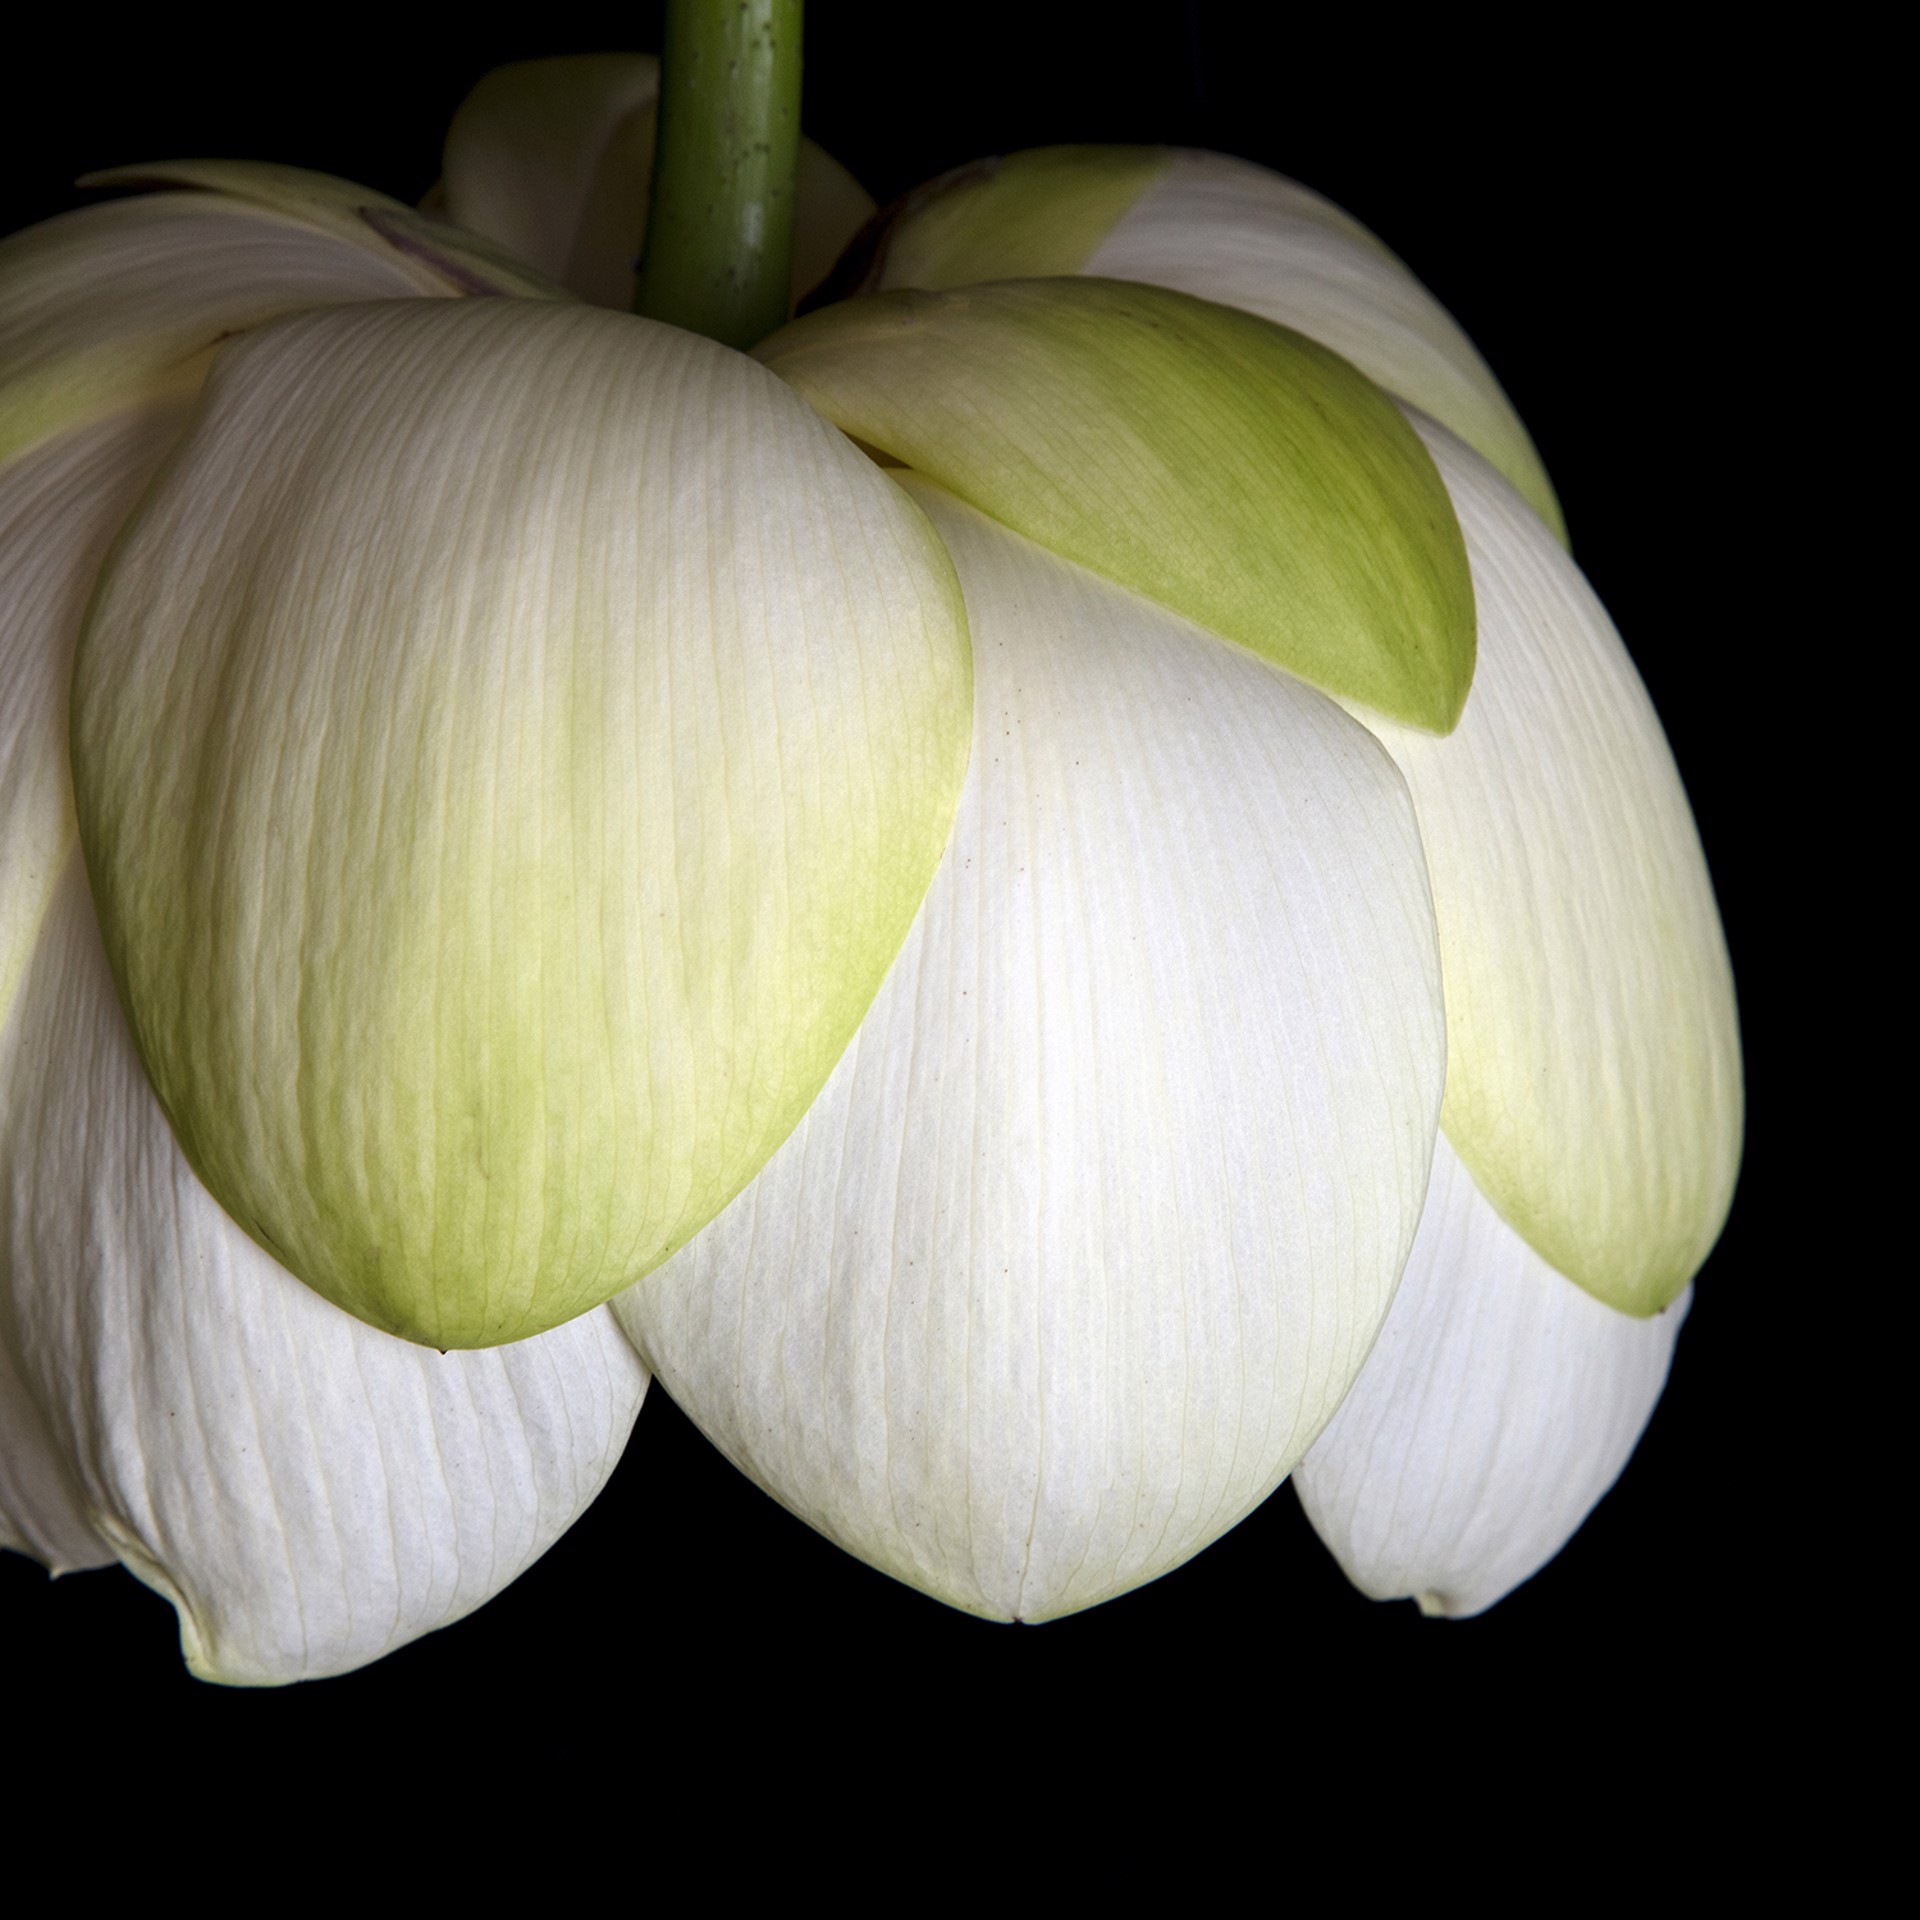 American lotus (Nelumbo lutea) 9991 by Molly Wood